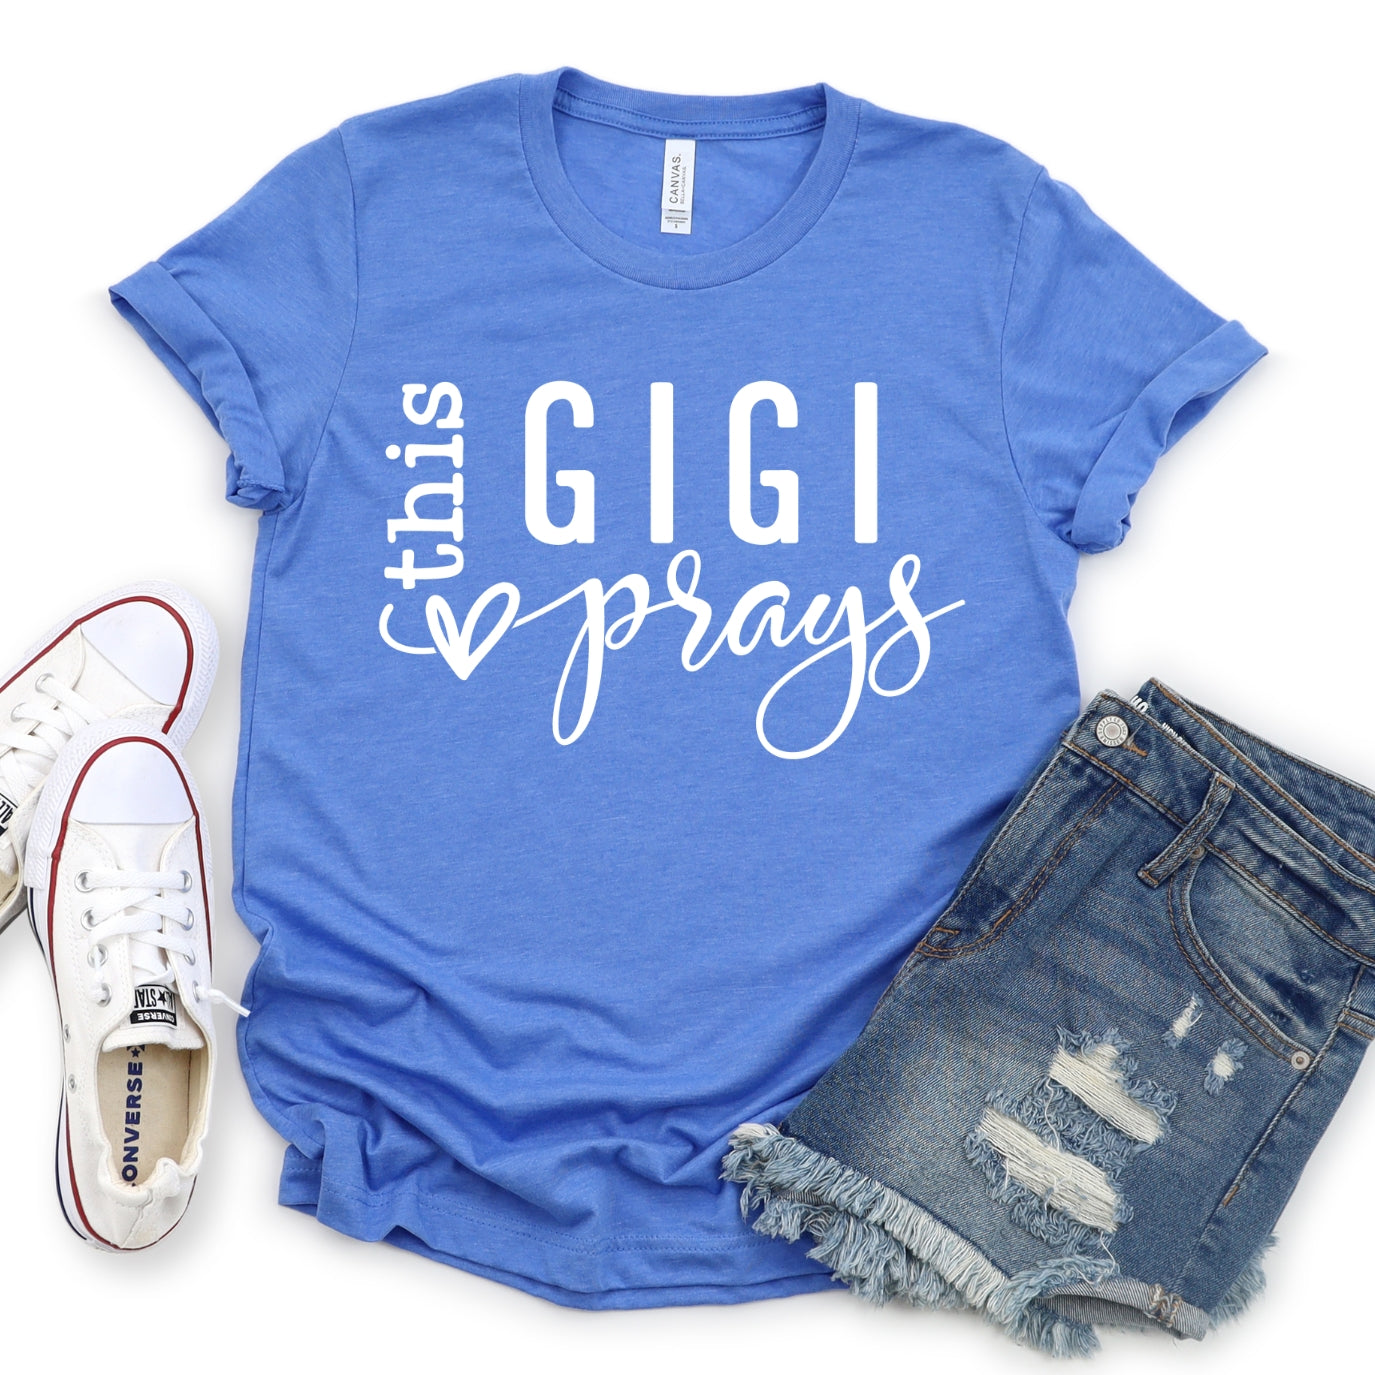 This GiGi Prays Women's T-Shirt